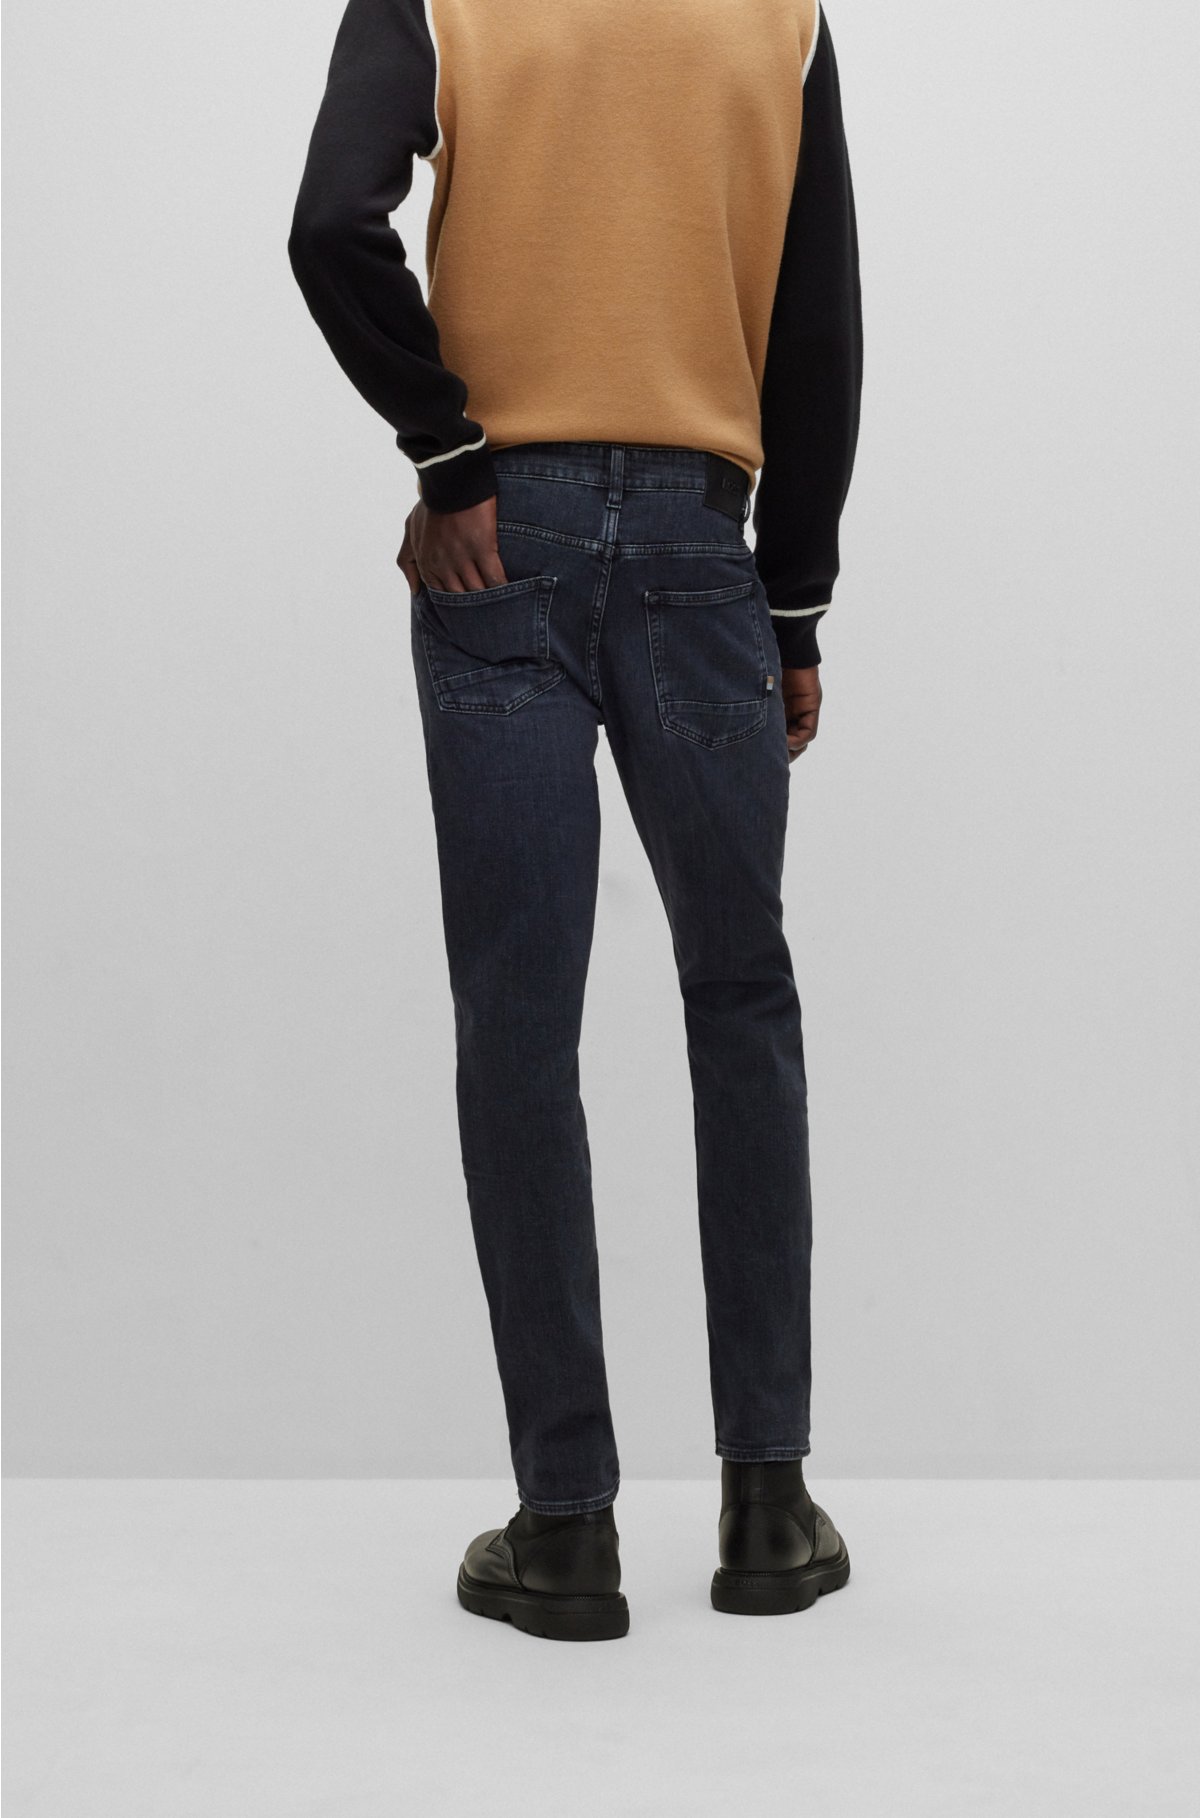 BOSS - Slim-fit jeans in dark-blue super-soft denim